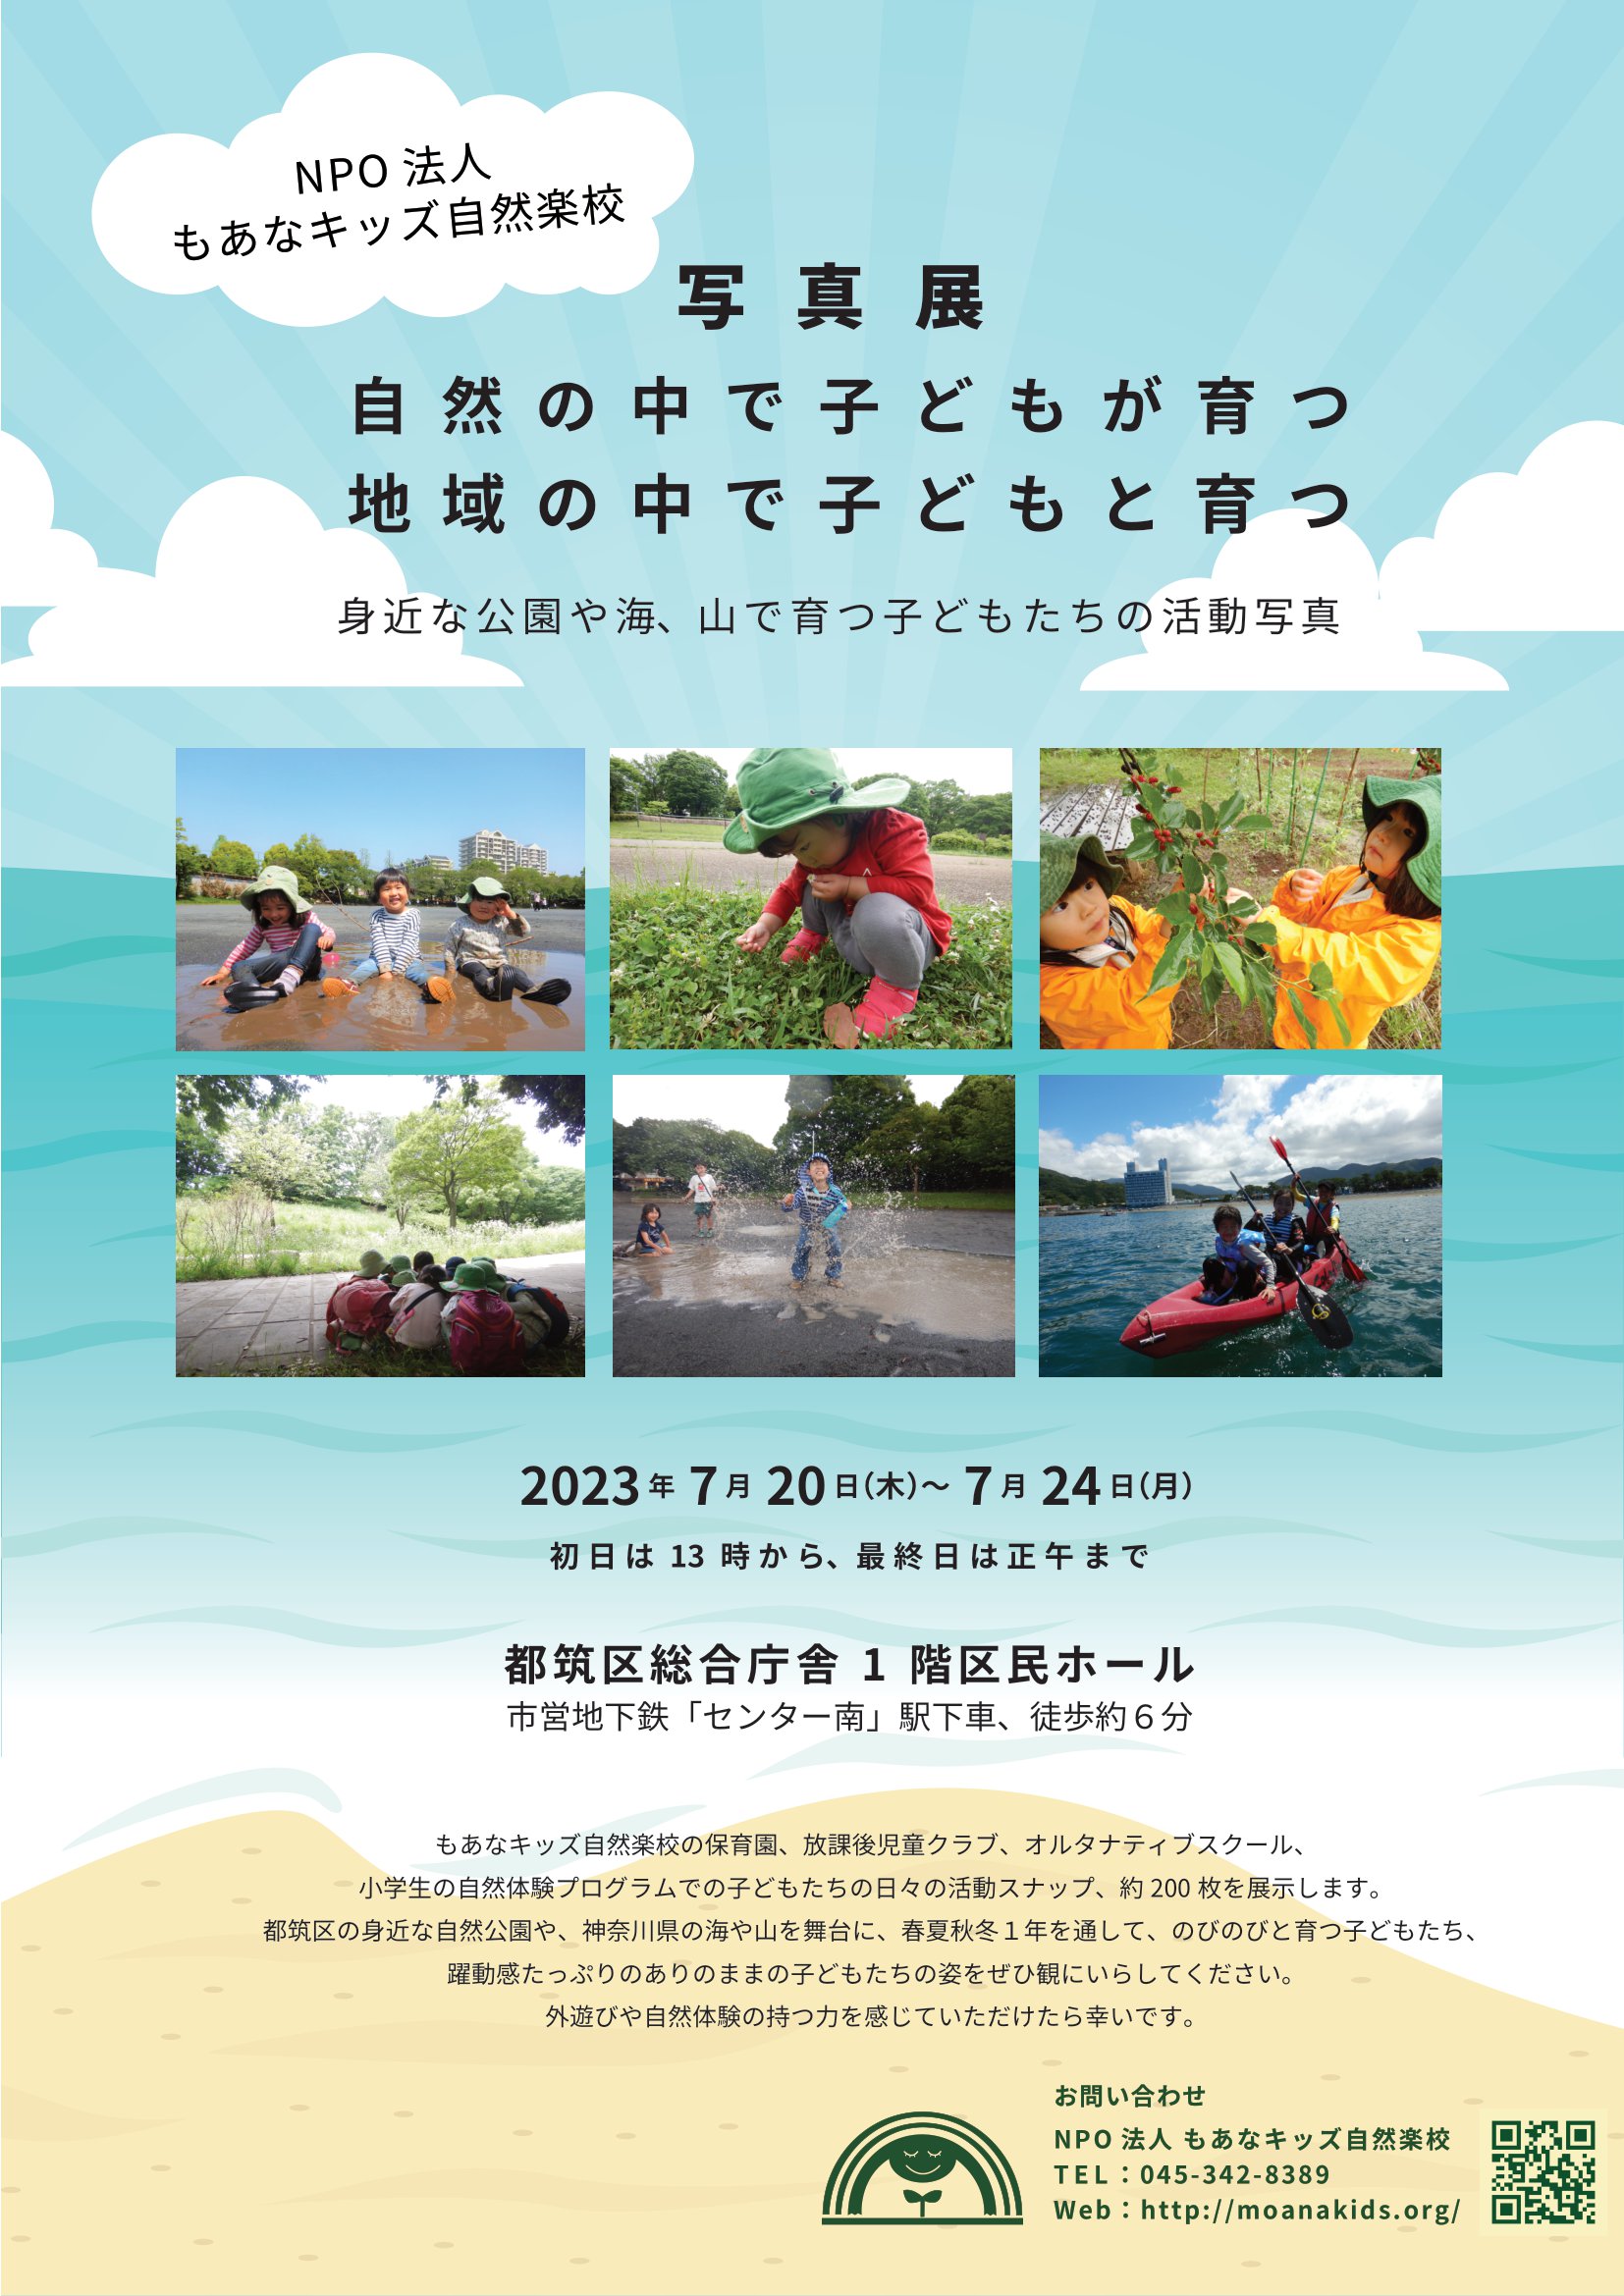 【横浜エリア】7/20(木)～7/24(月) もあなキッズ自然楽校 活動写真展を開催します